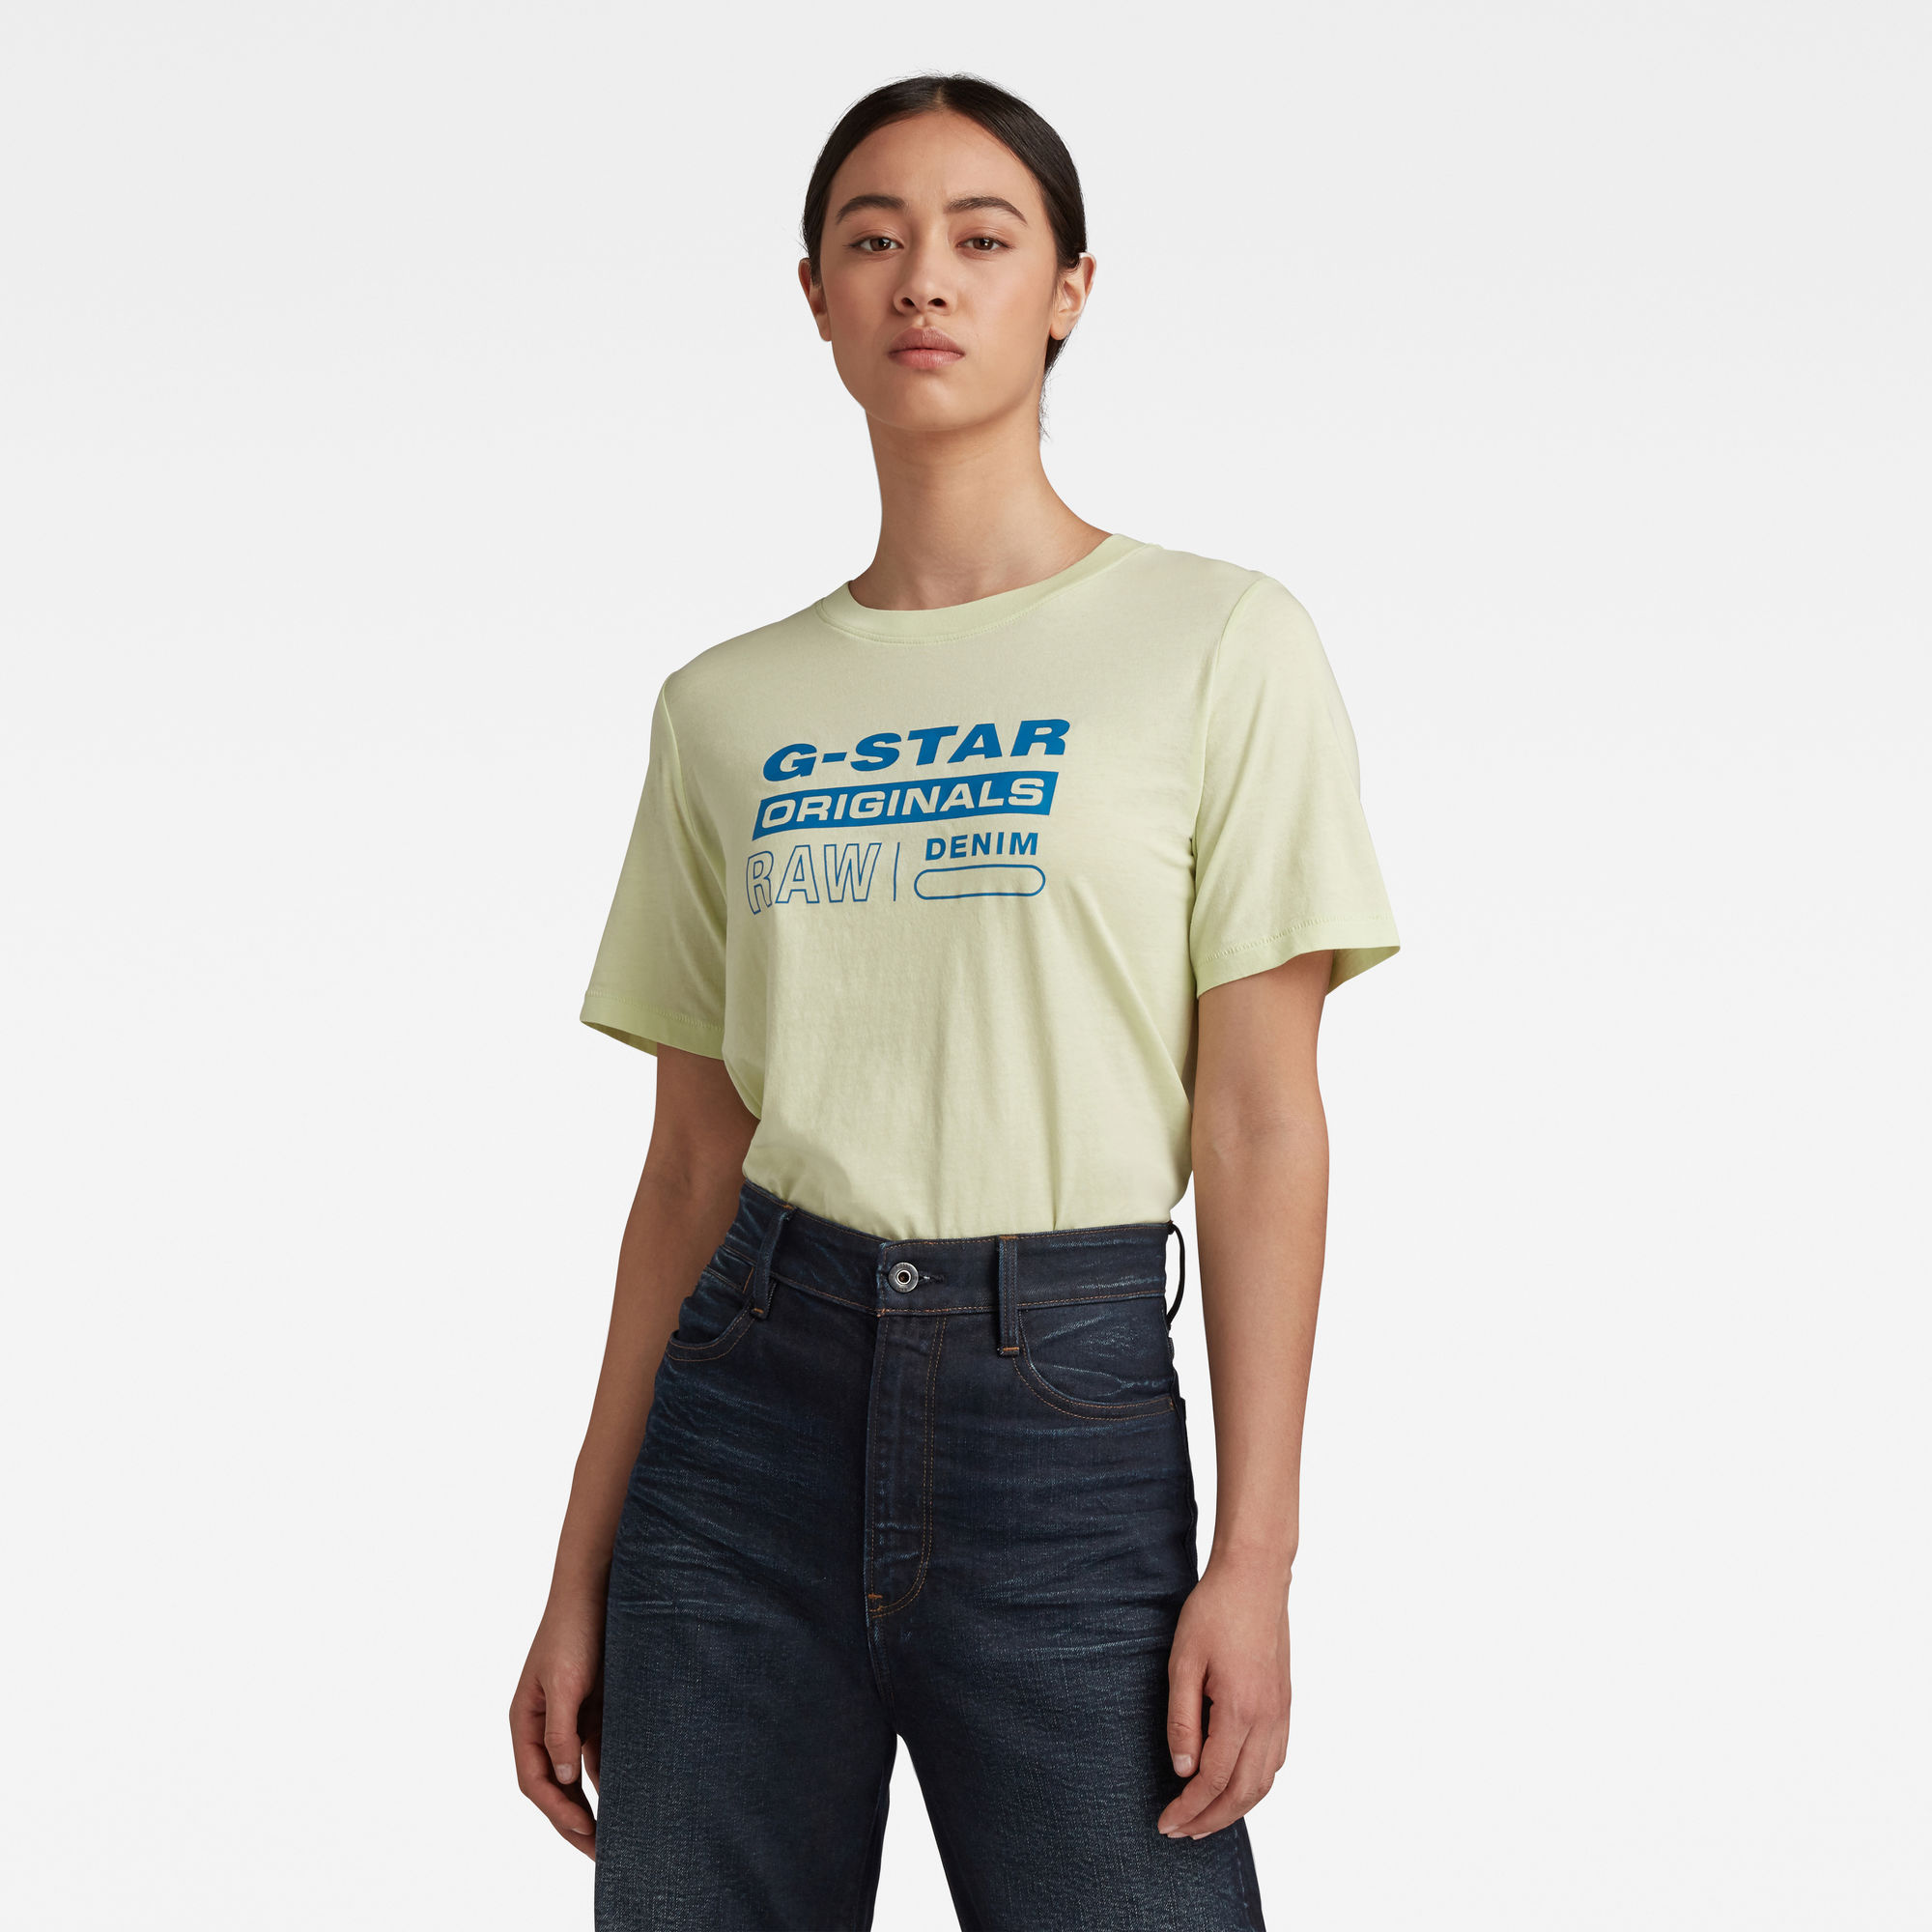 G-Star RAW Femmes T-shirt Originals Label Regular Vert